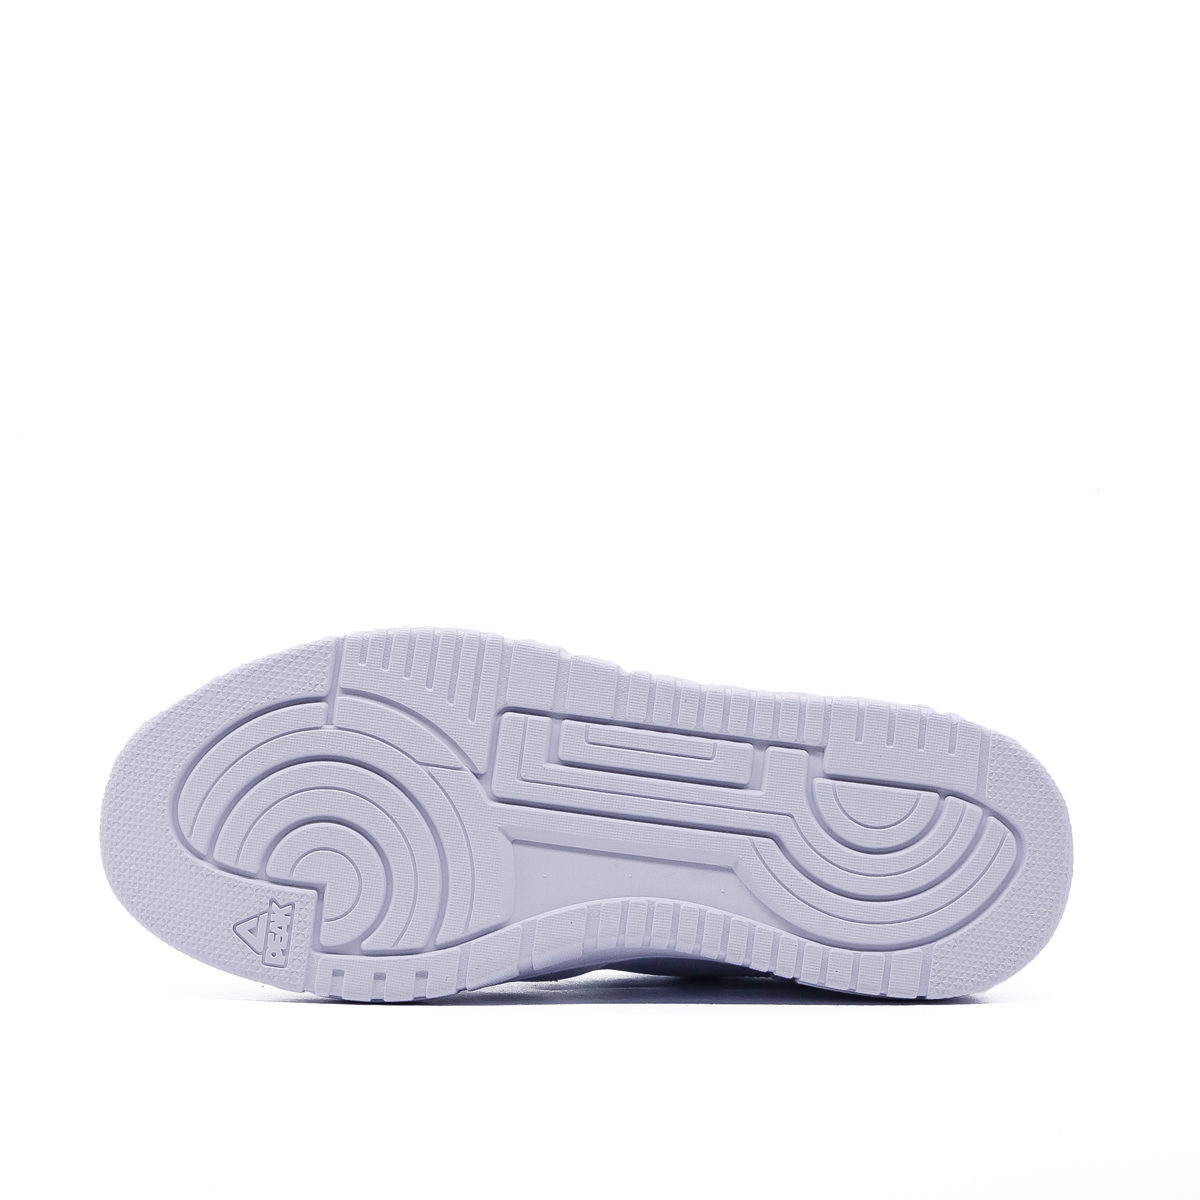 Giày Thời Trang Thể Thao Nữ PEAK PEAK Casual Low Top "Trắng Ghi" E232022BTG – Hàng Chính Hãng